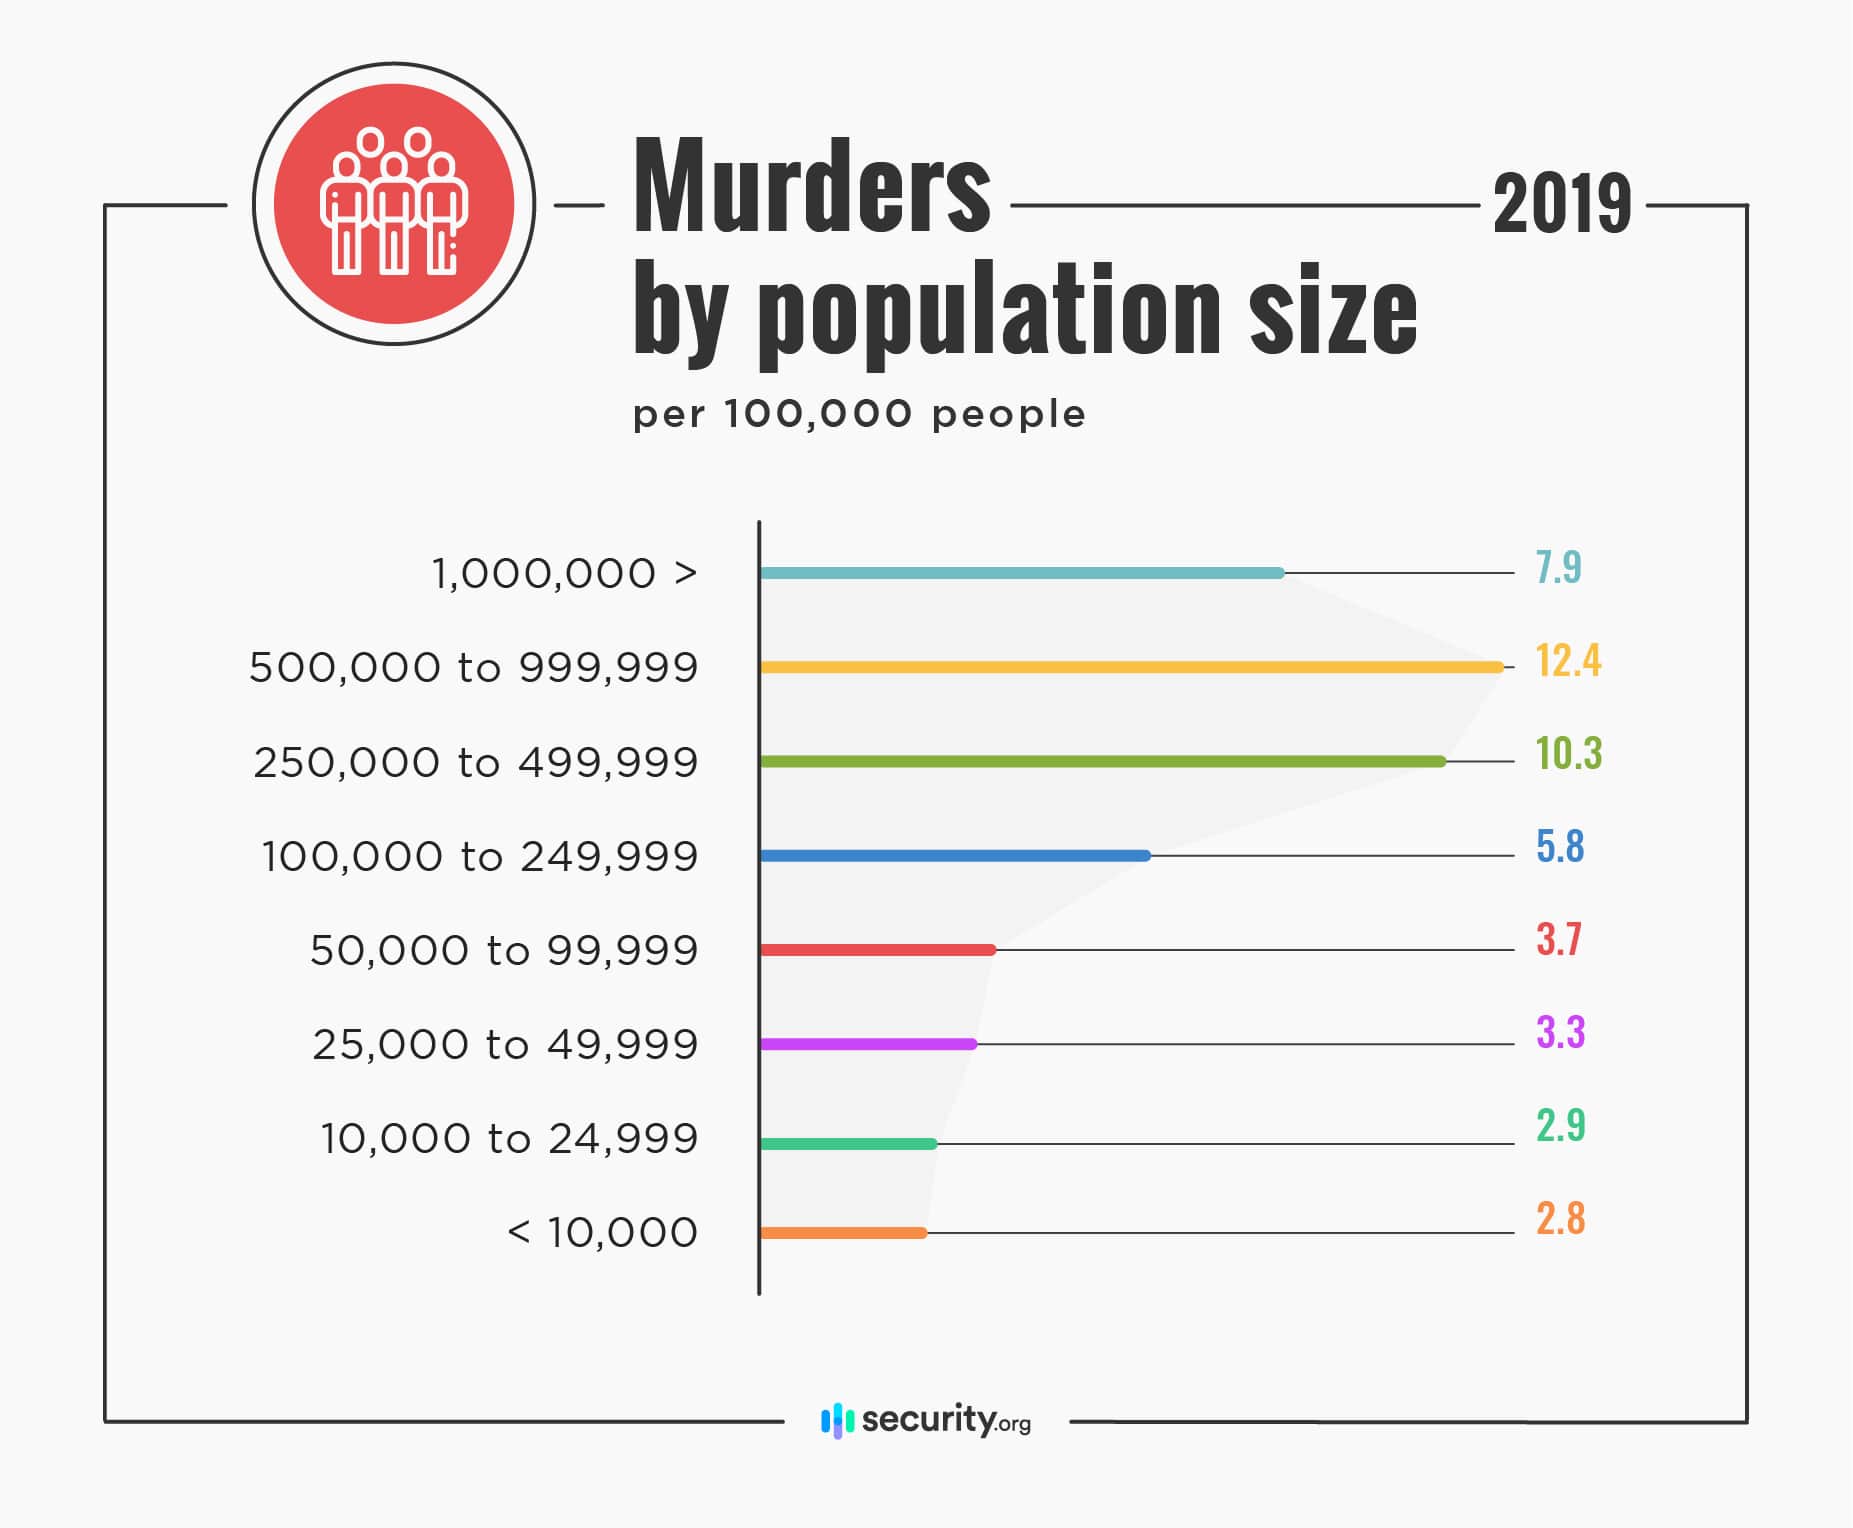 Murders by population size per 100k people in 2019